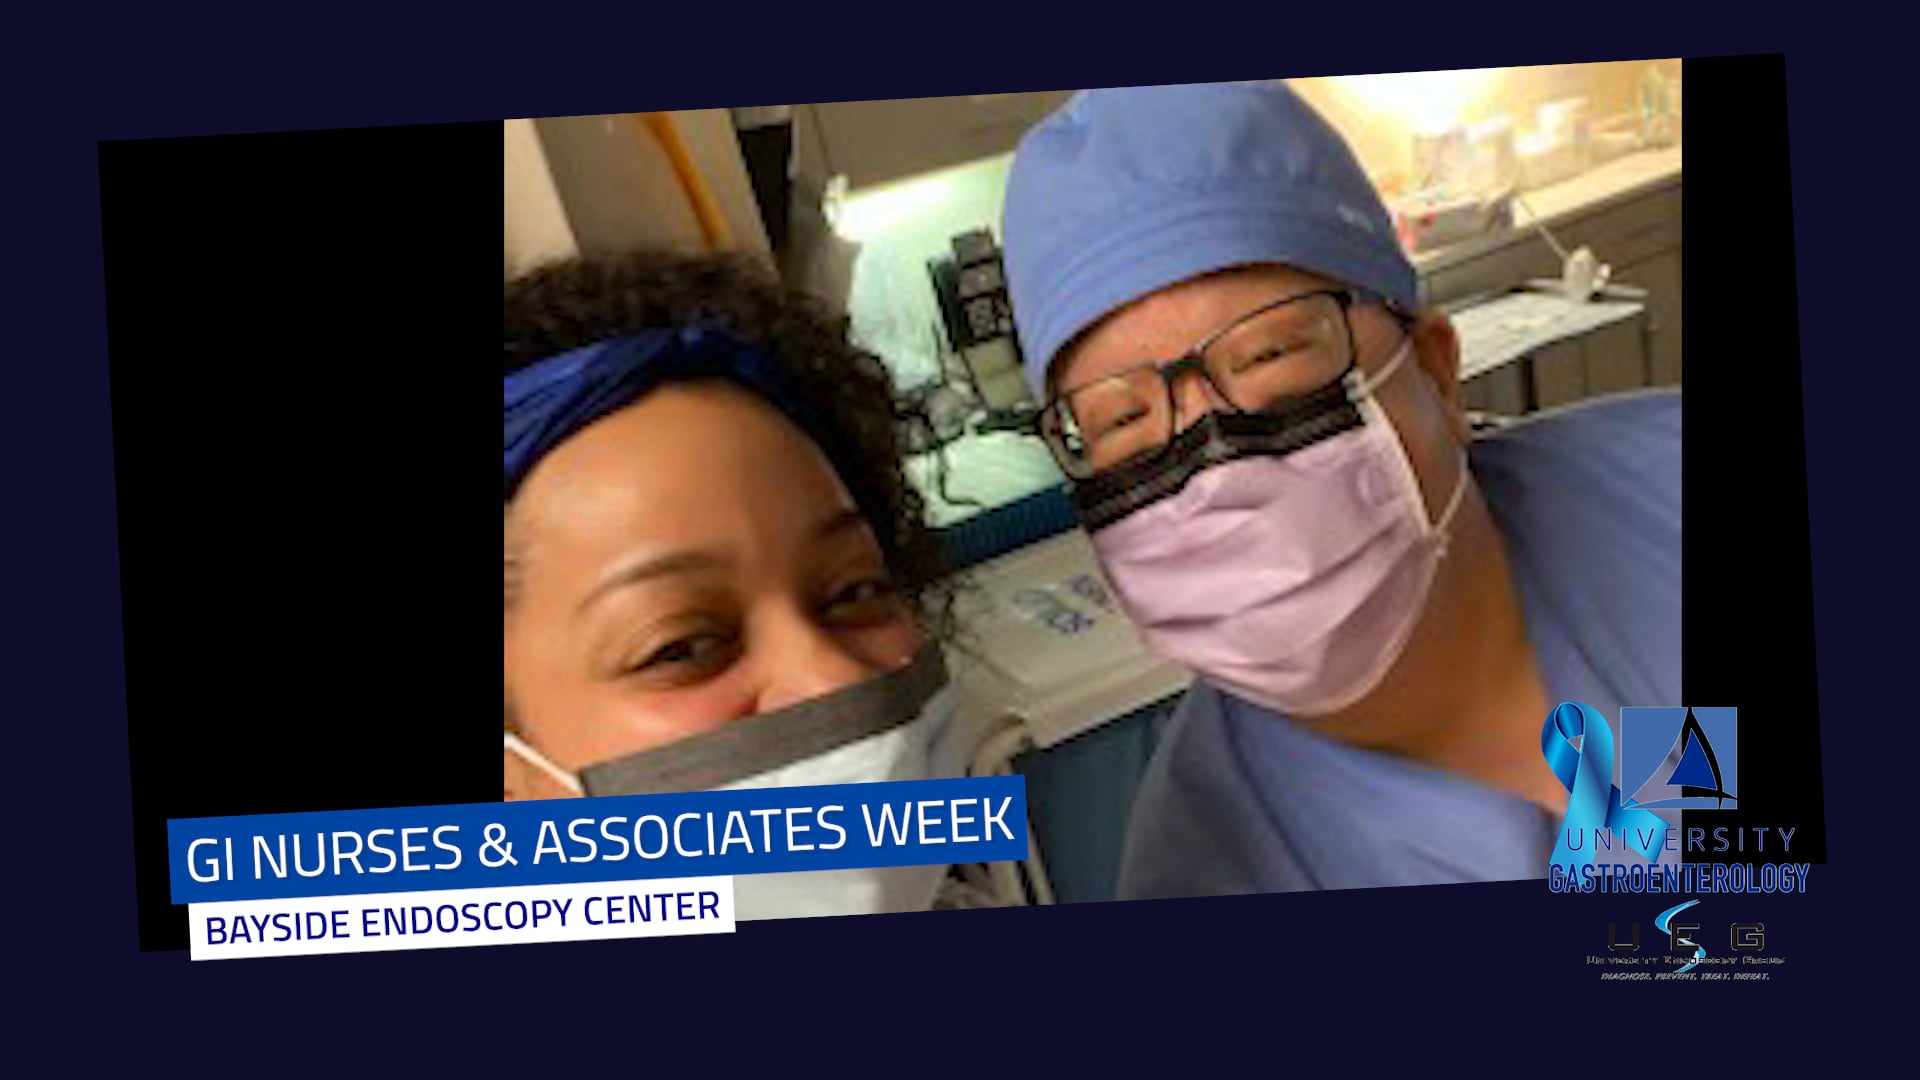 gi nurses week on Vimeo